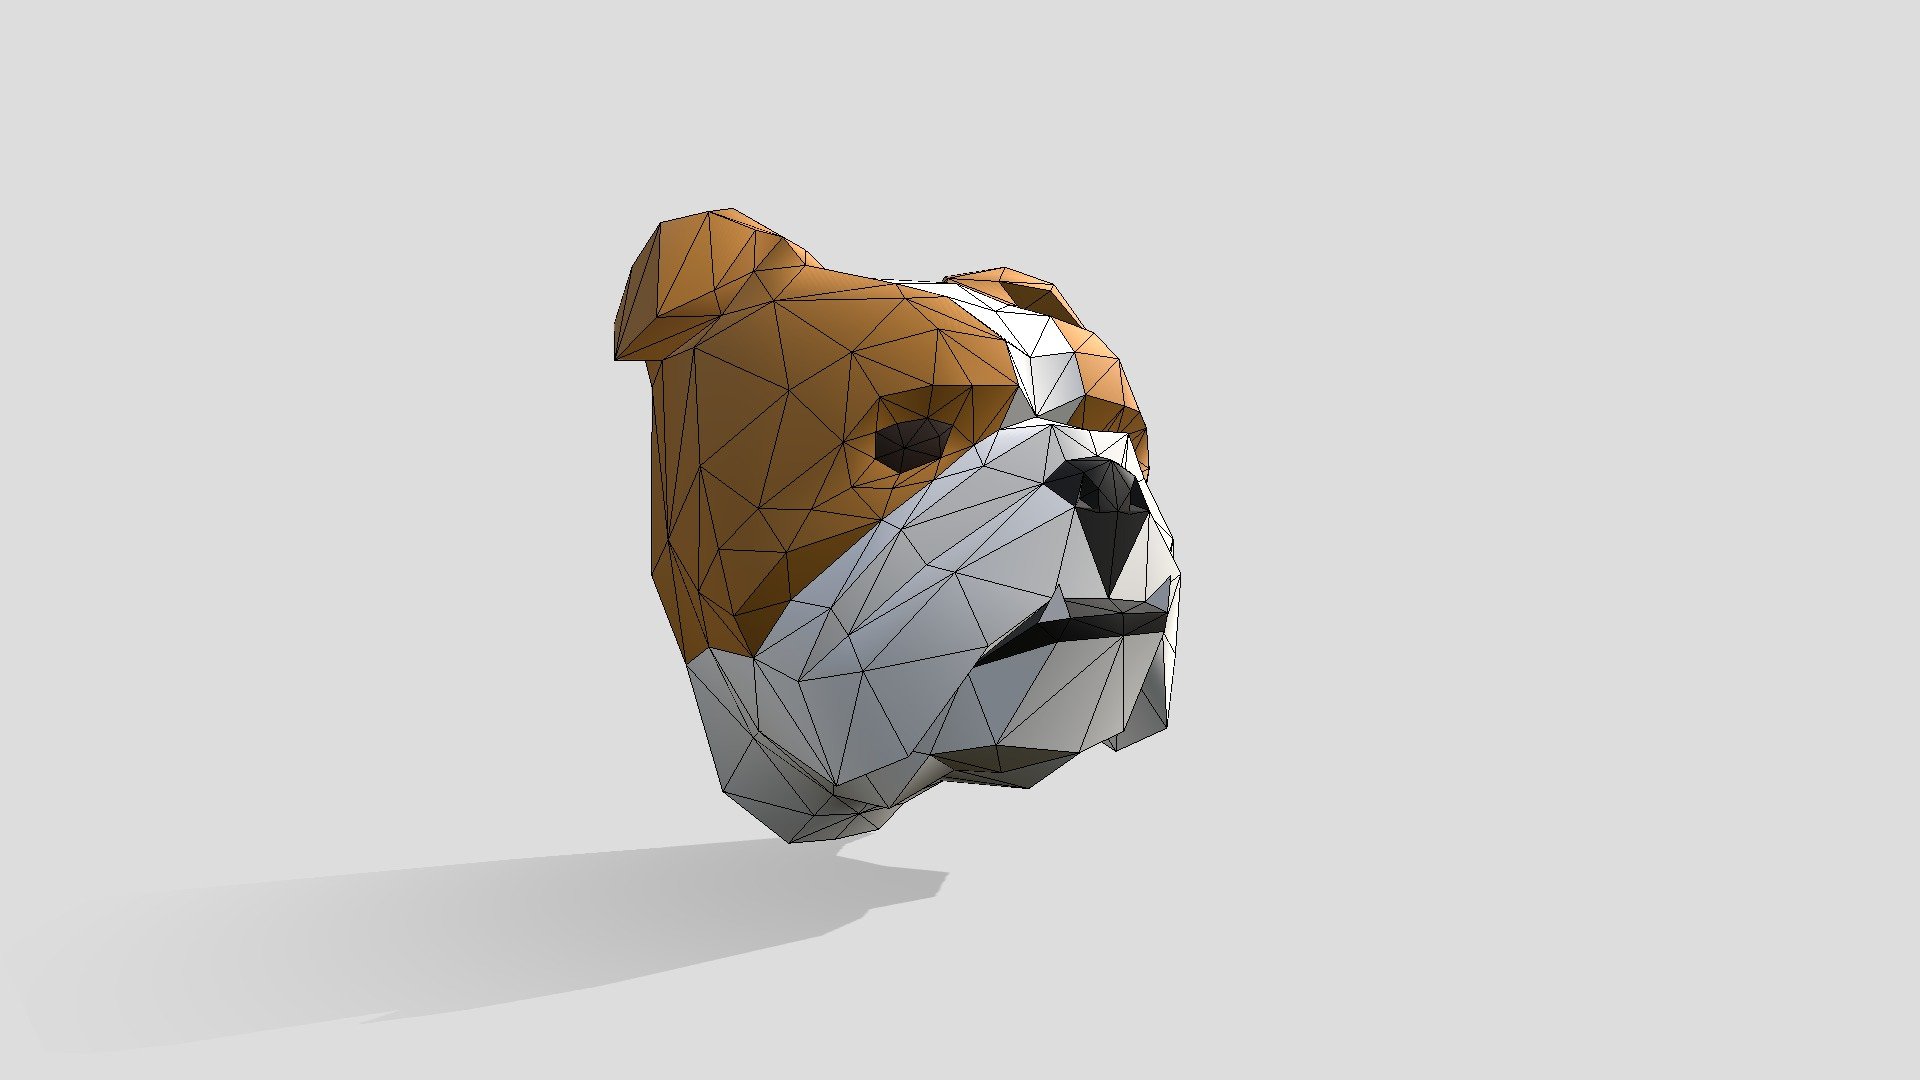 Cabeza de bulldog lowpoly
diseños recomendados para pepakura , impresion 3d - Bulldog Con Colmillos - 3D model by vanneyepes6 3d model